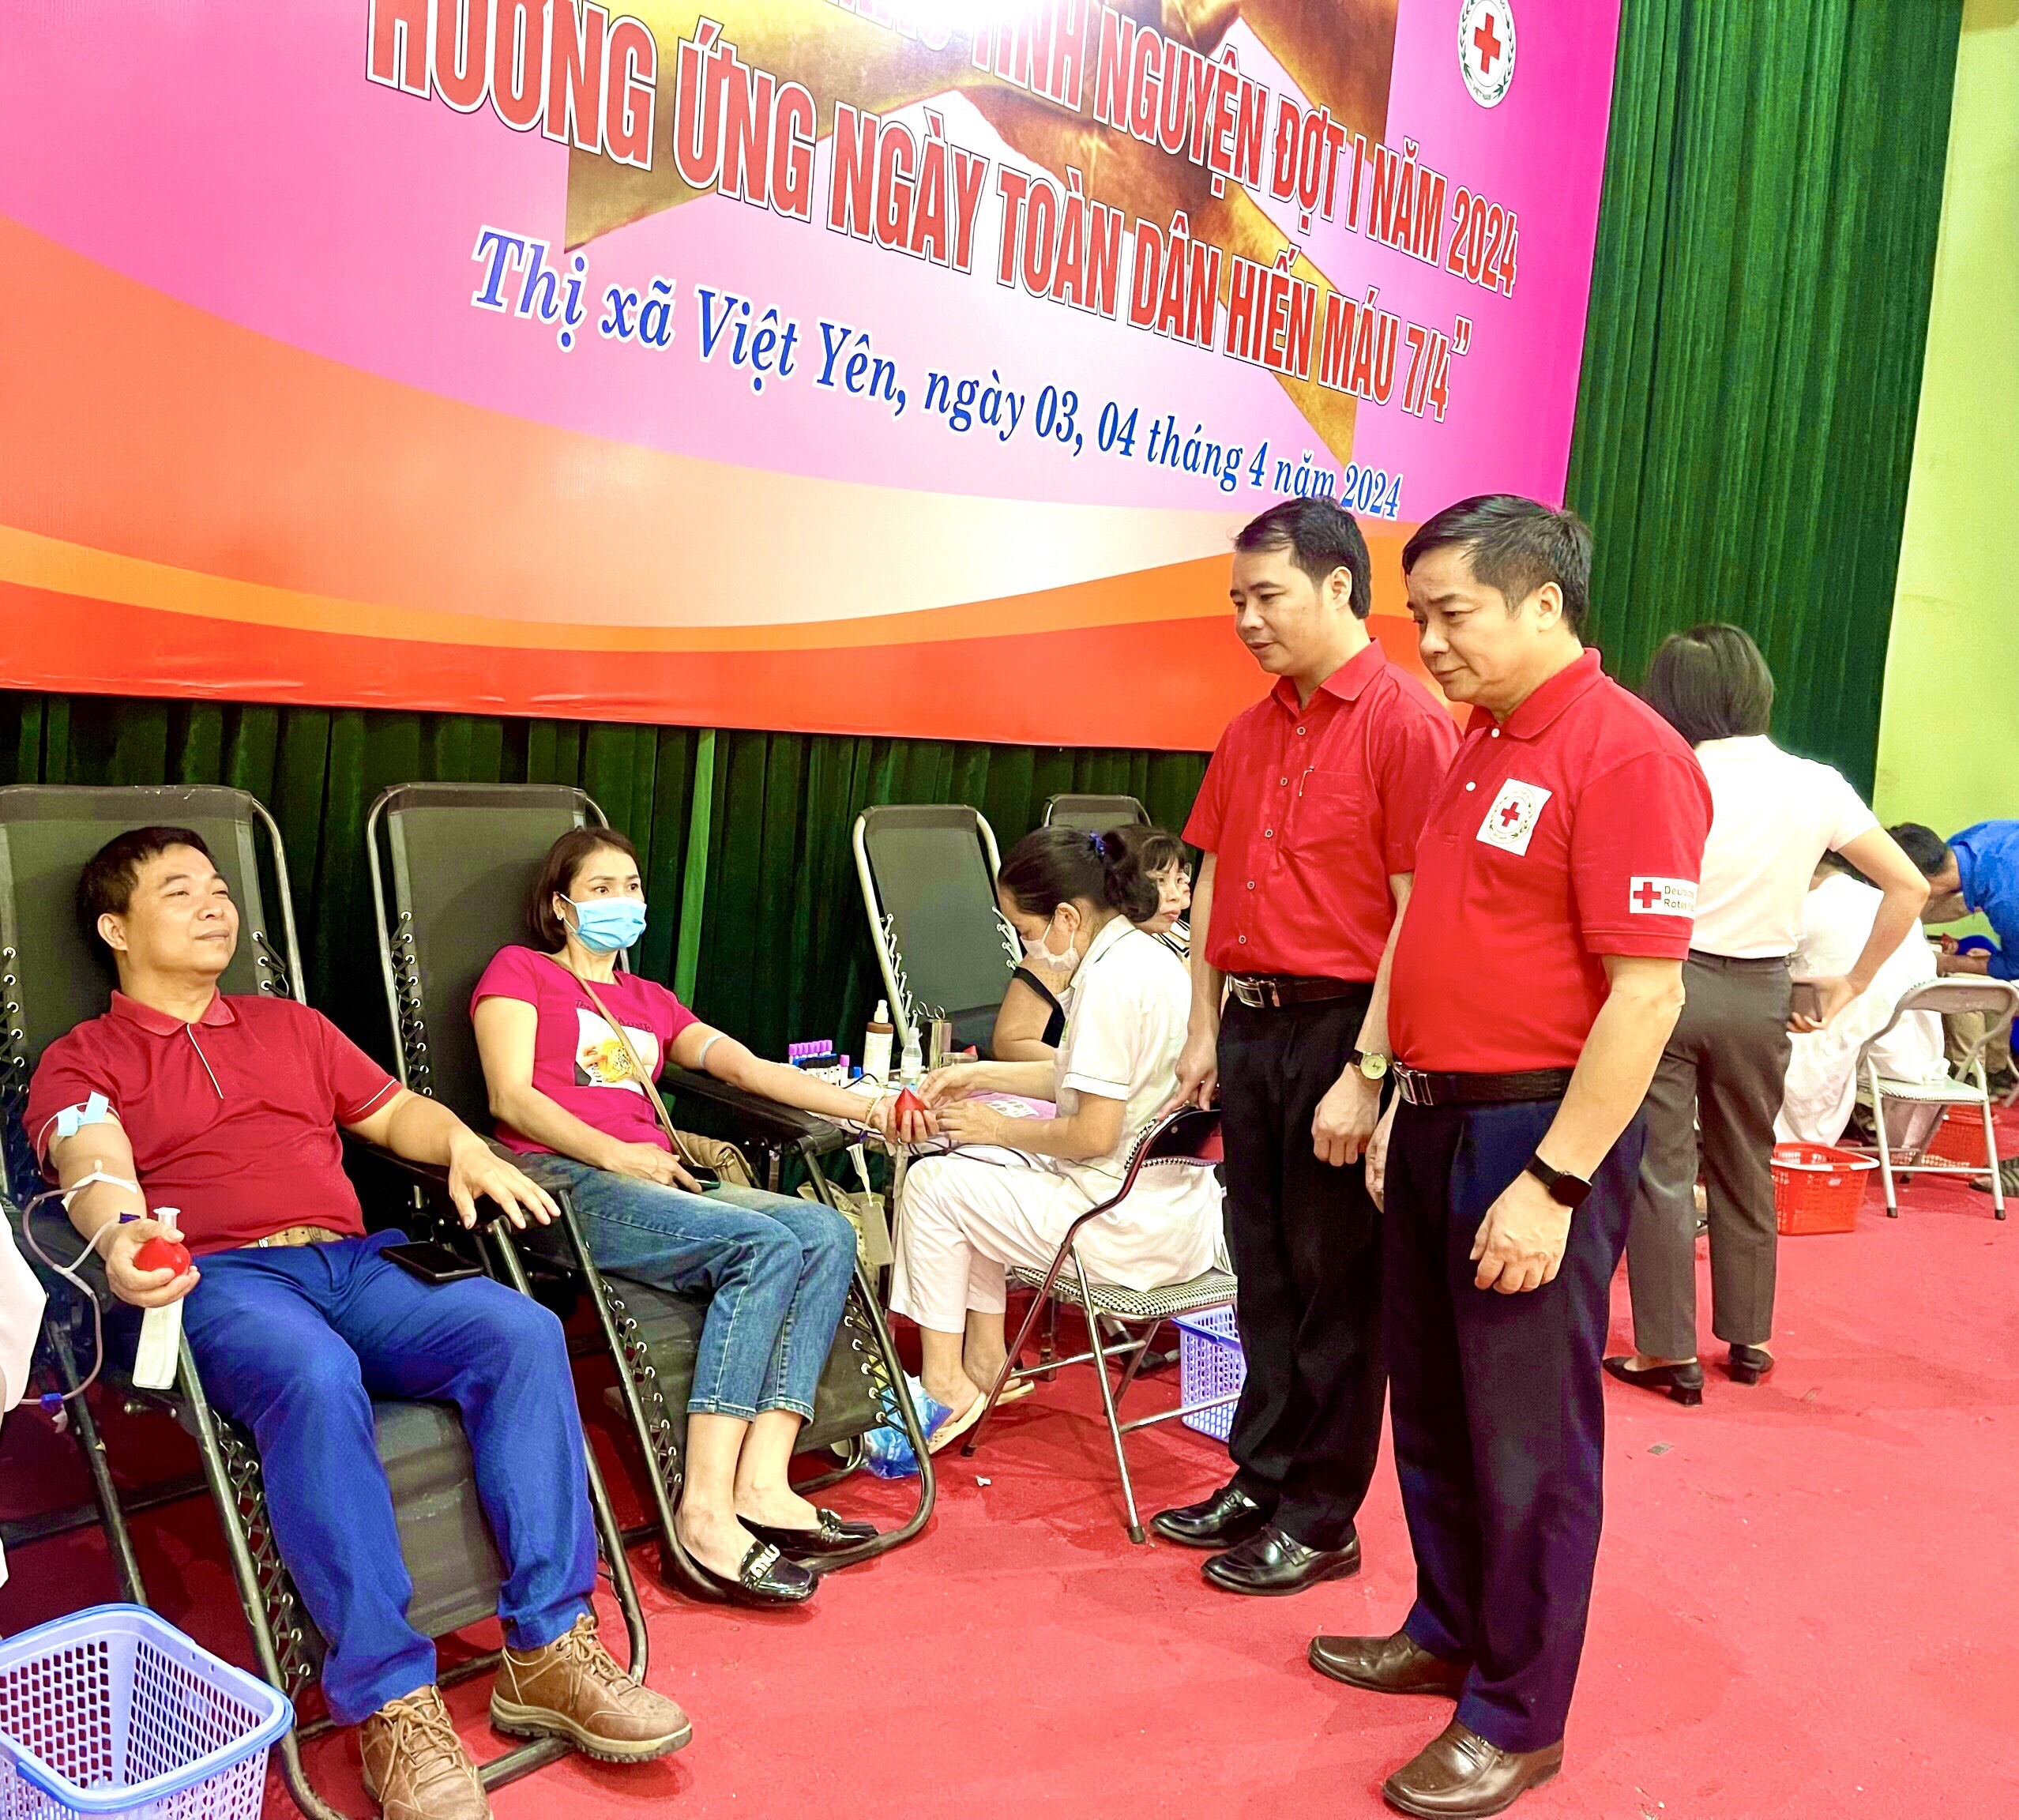 Bắc Giang: Gần 2.000 đơn vị máu được tiếp nhận tại Ngày hội Hiến máu tình nguyện thị xã Việt Yên năm 2024.